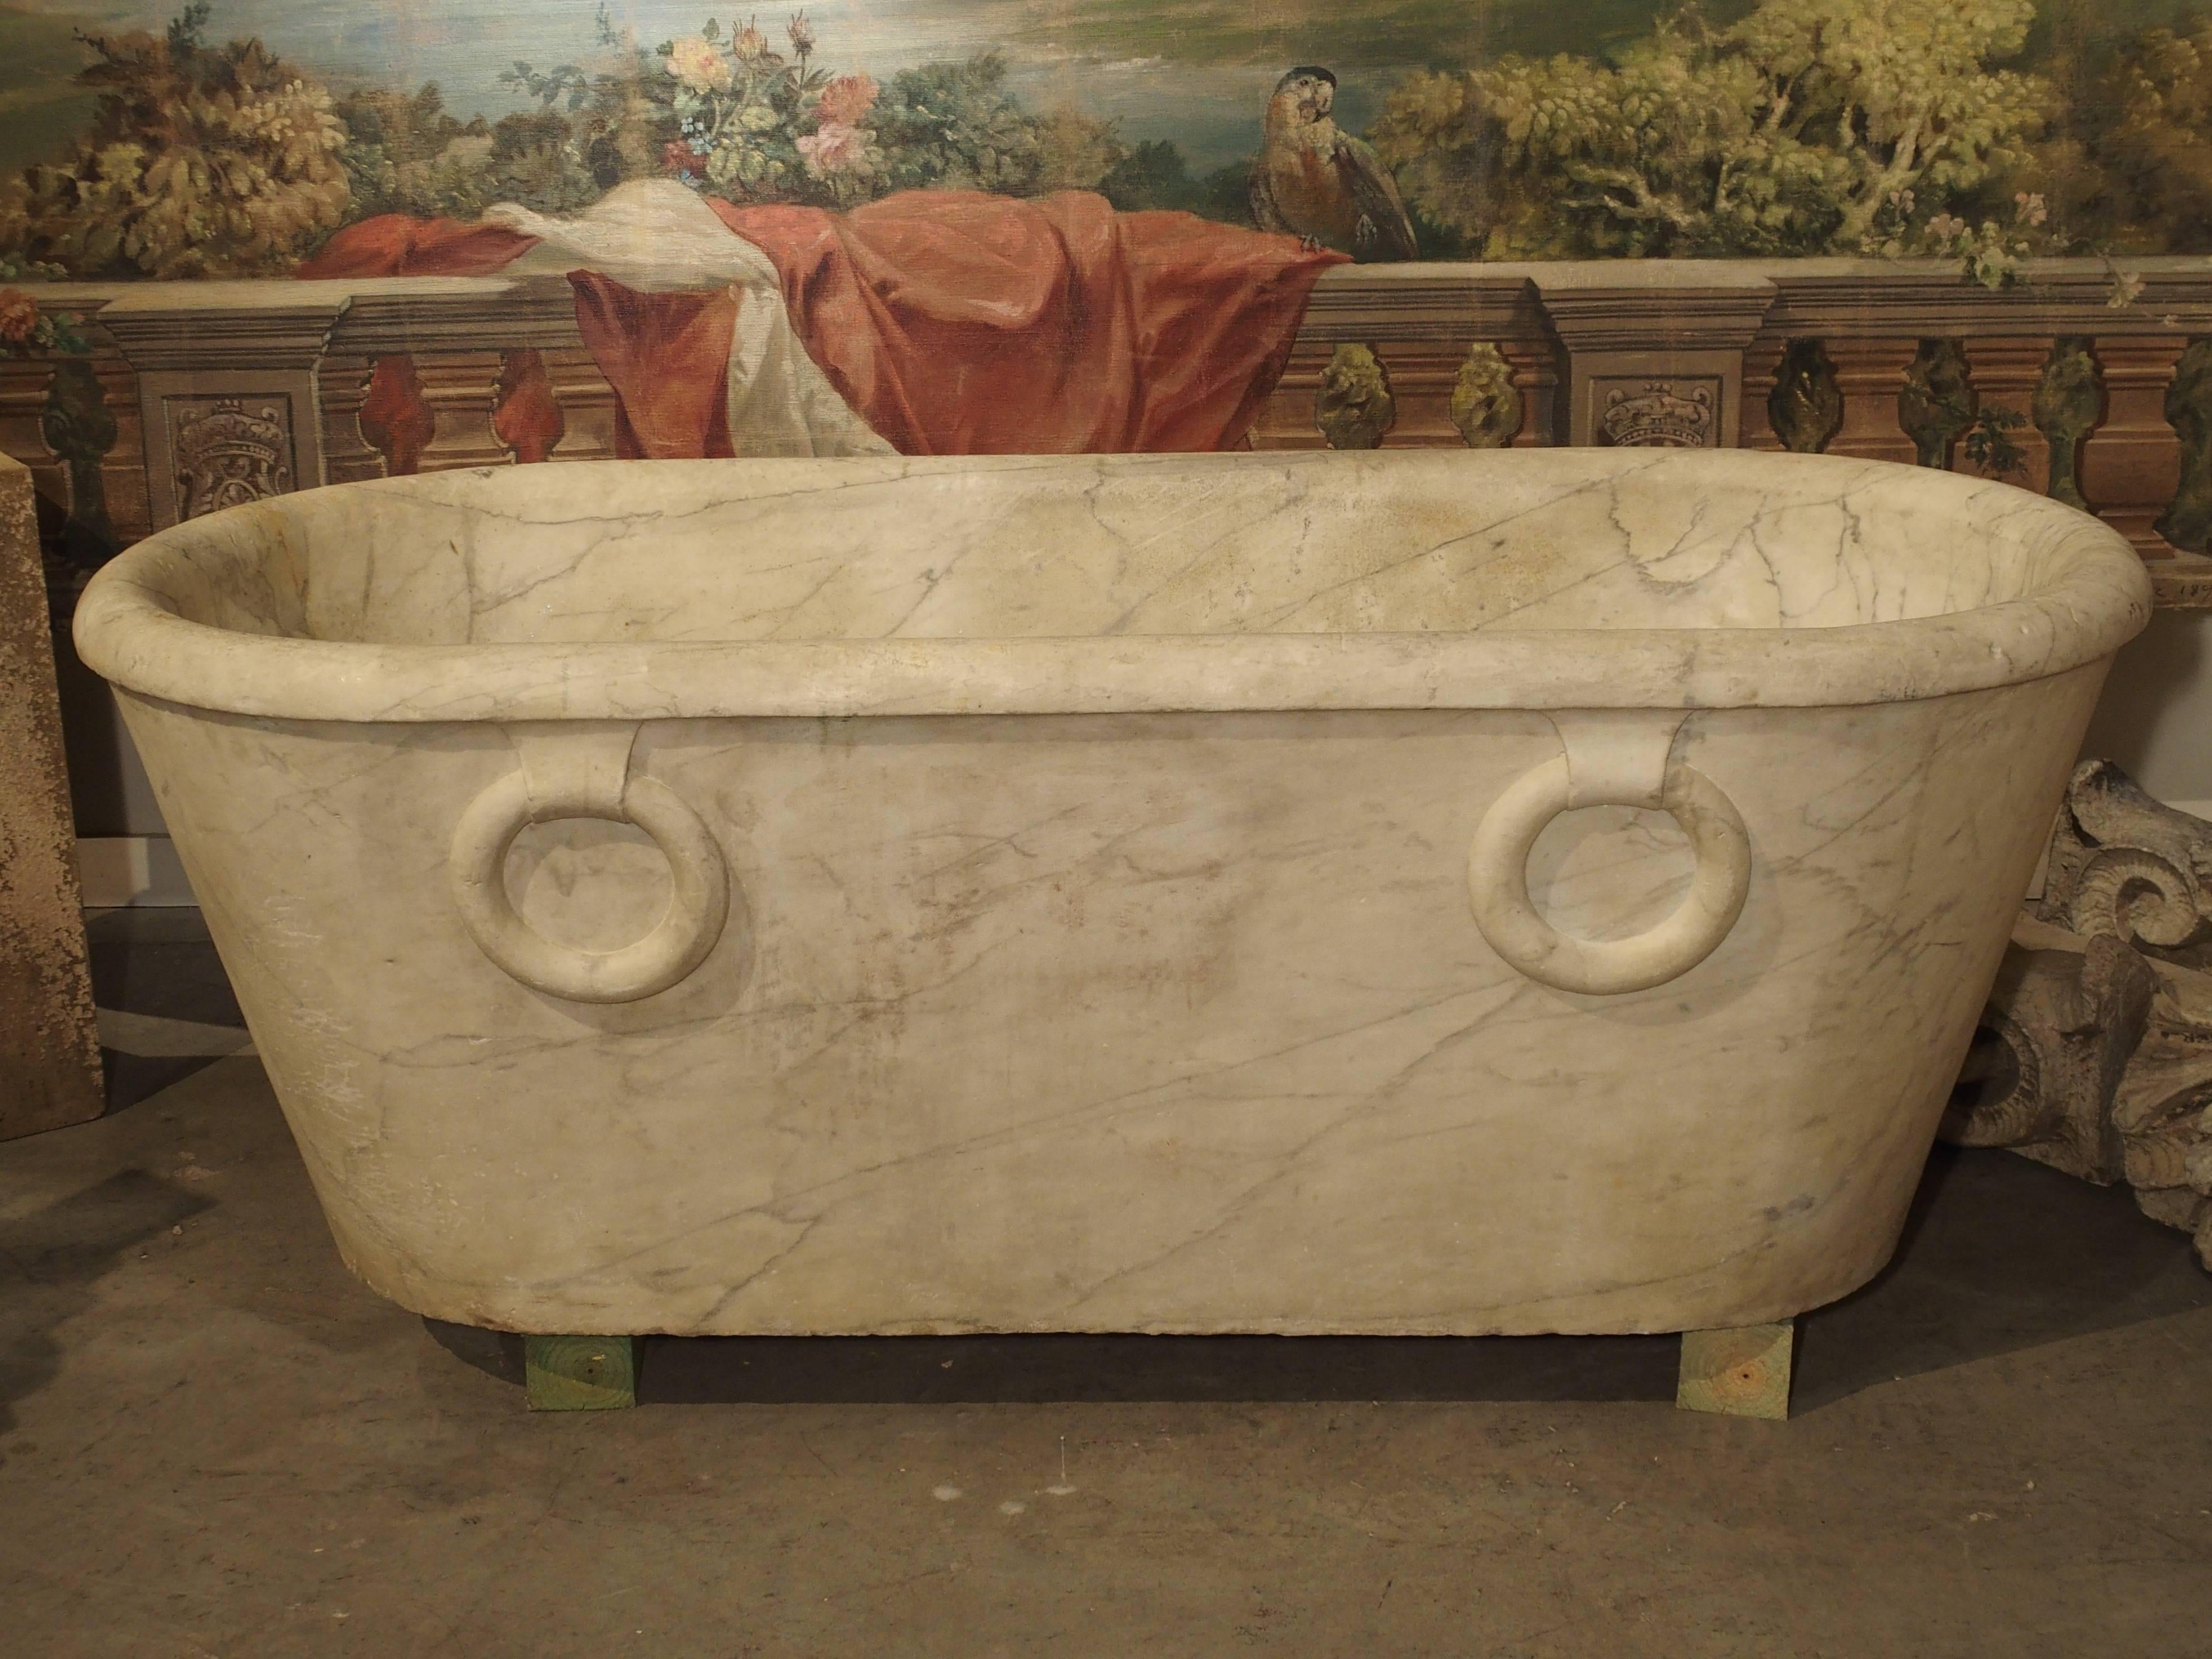 Antique Carrara Marble Bathtub from Italy, Early 1800s Genoa 1